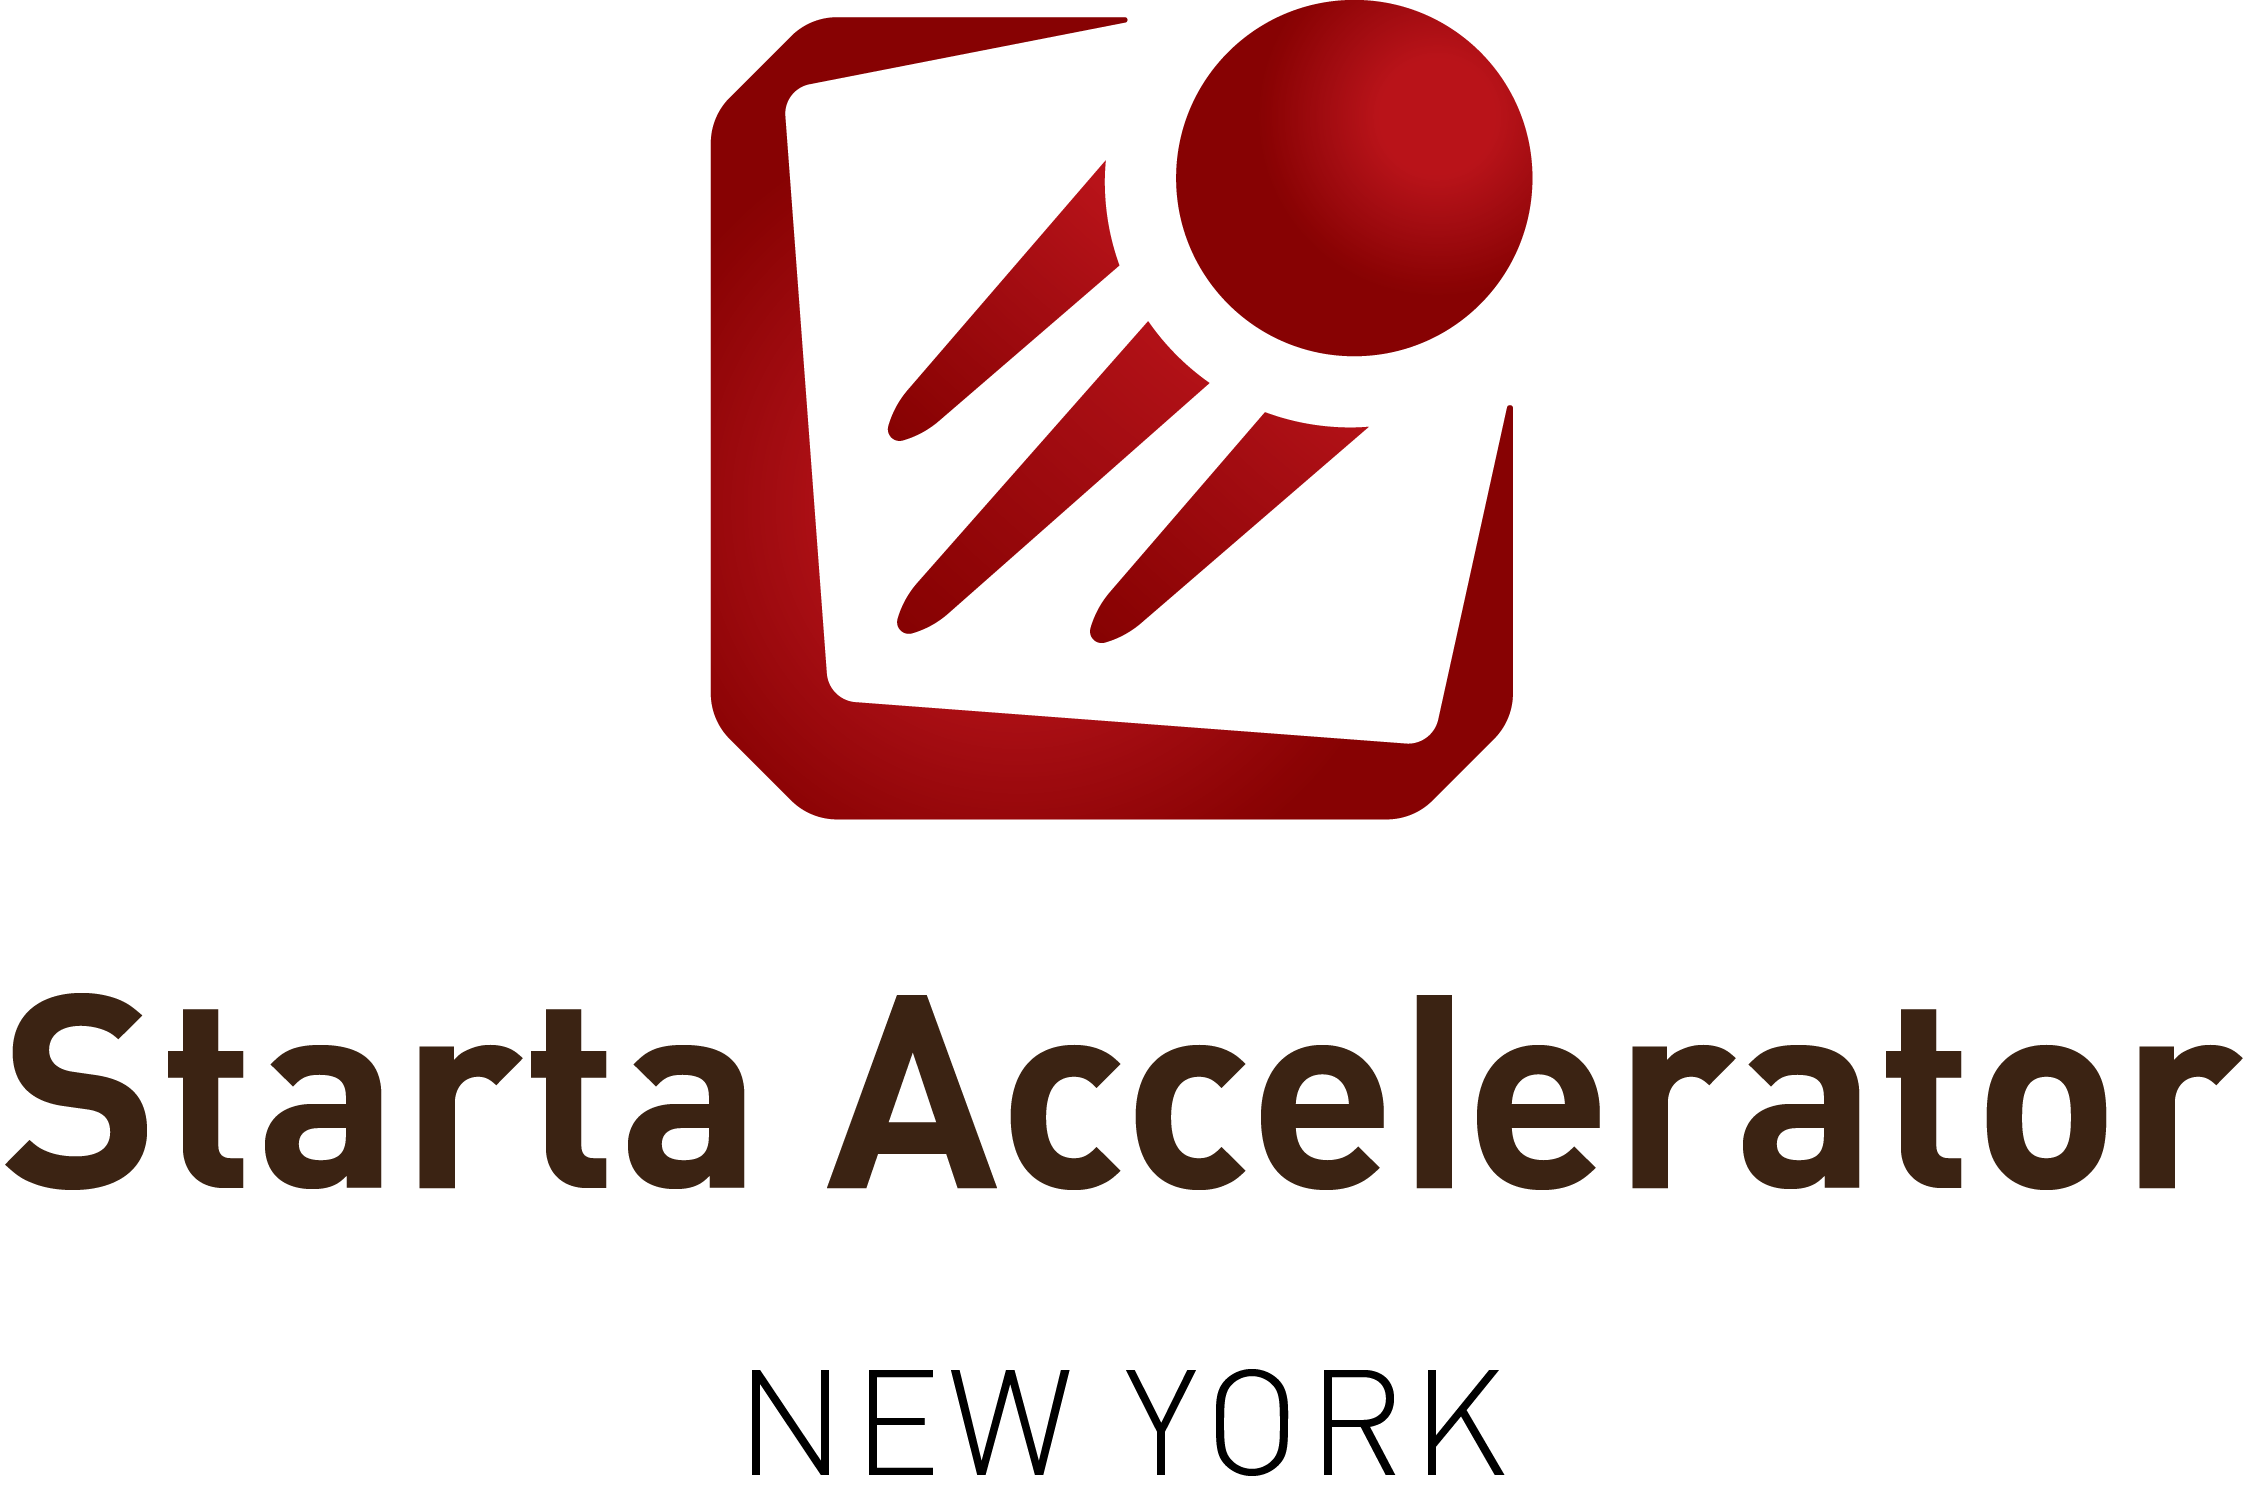 Starta Accelerator объявил о запуске коворкинга для желающих выйти на североамериканский рынок